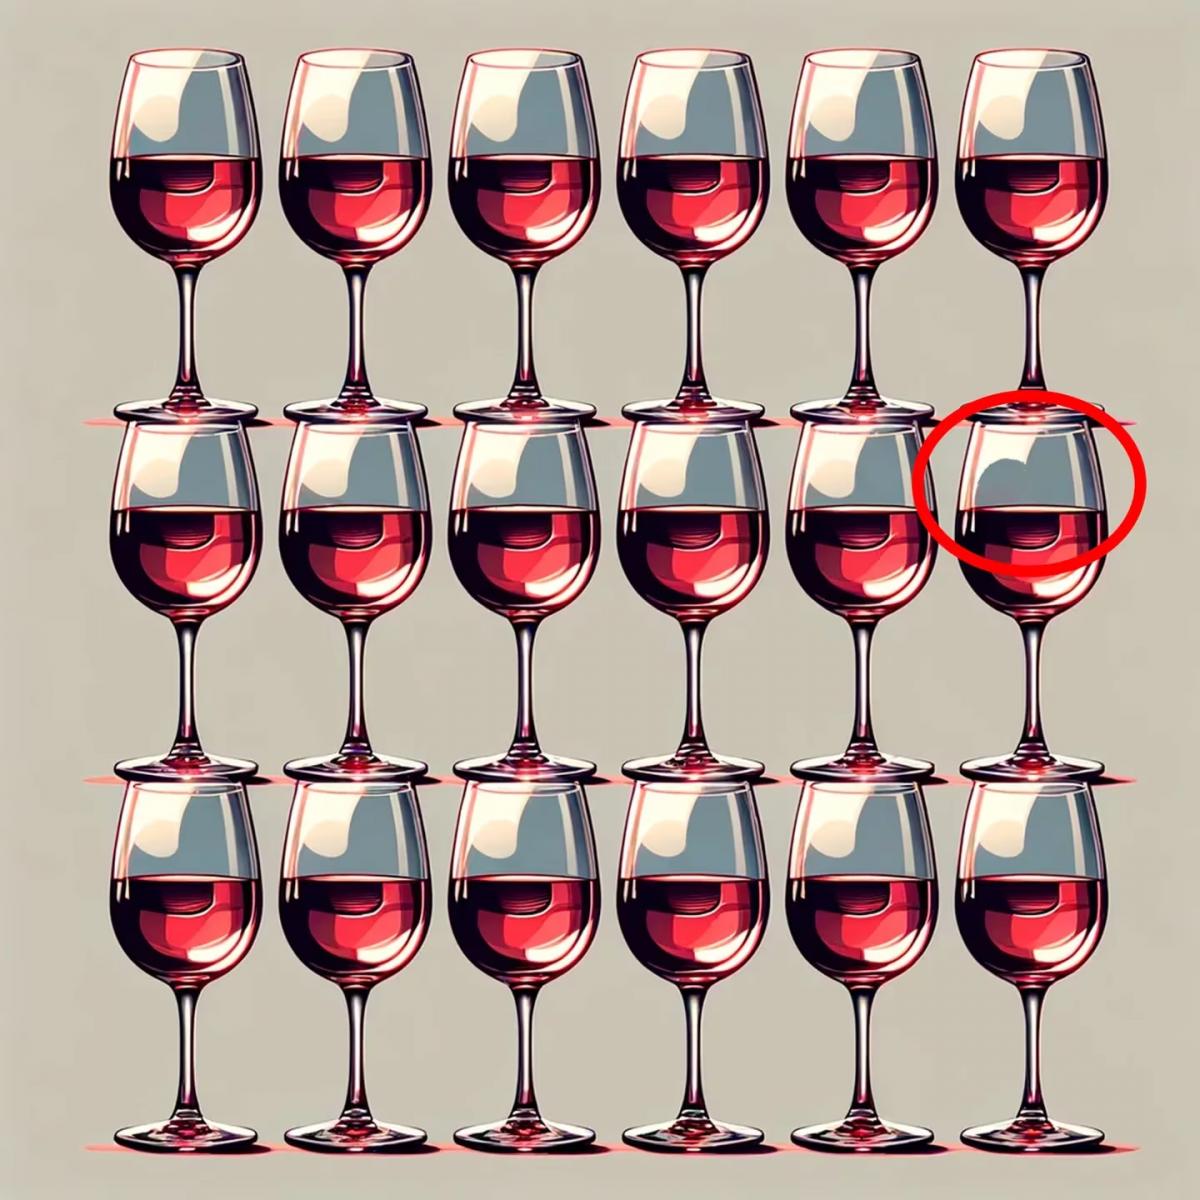 Solo una mente excepcional puede identificar la copa de vino que difiere en la imagen